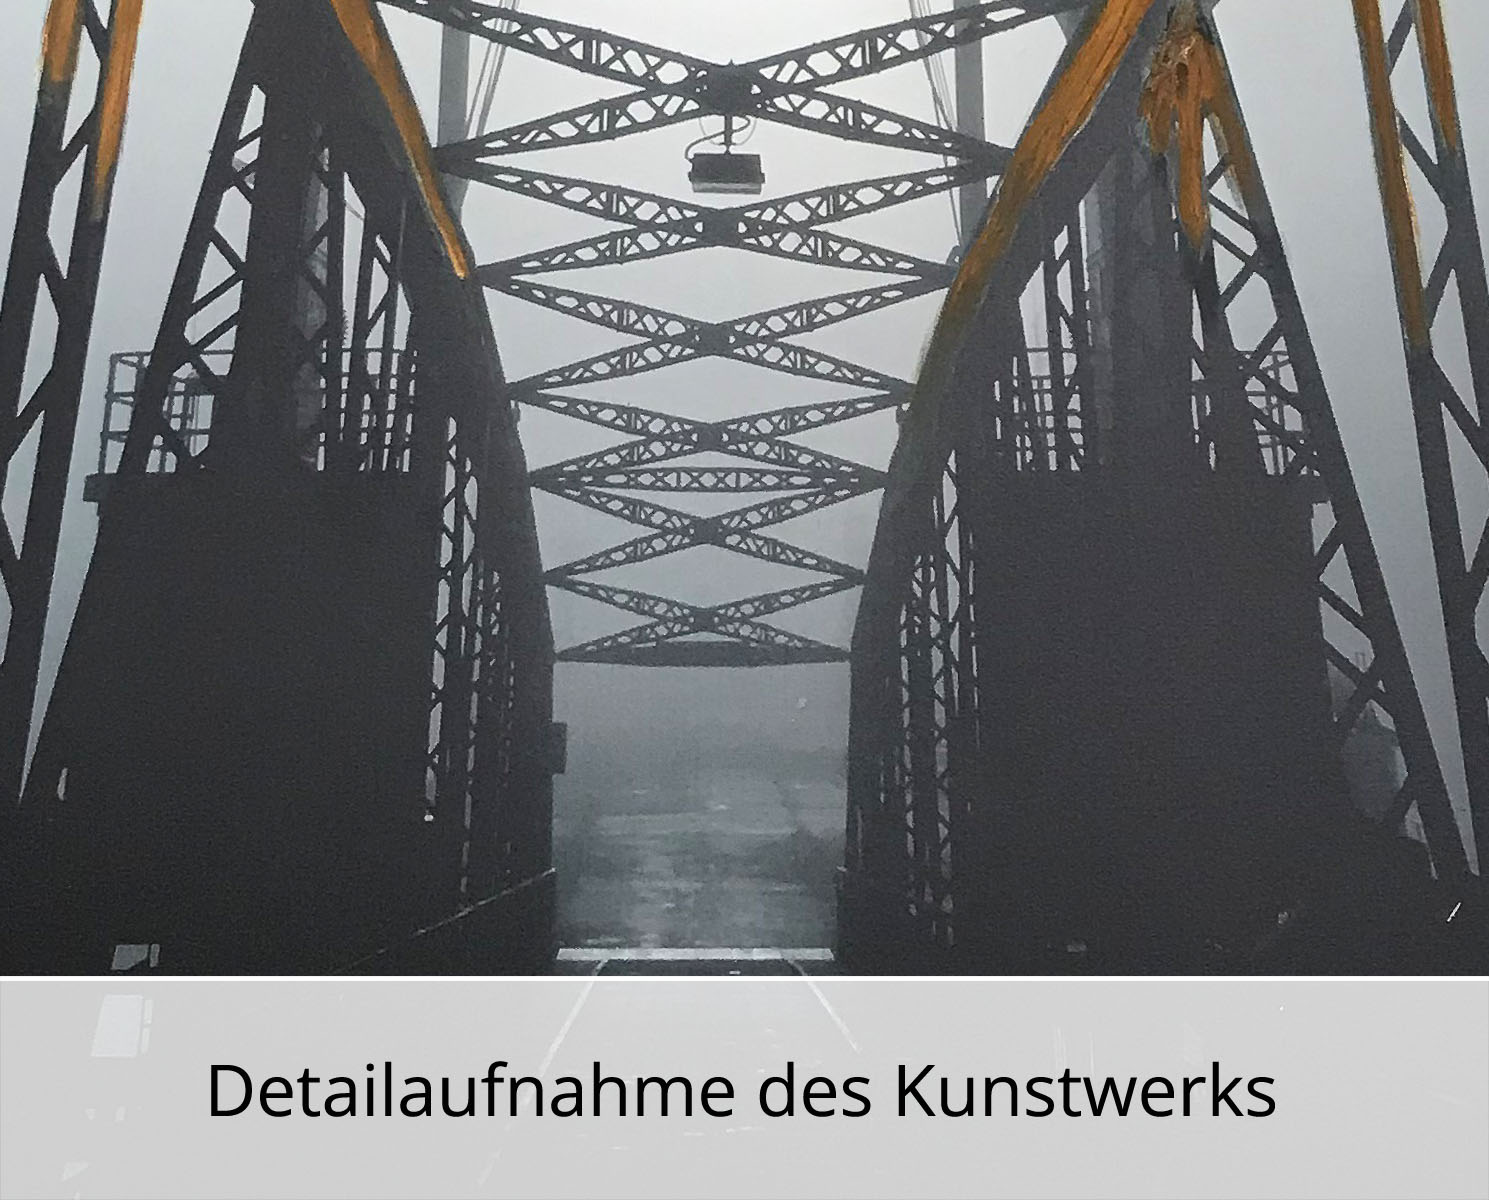 H. Mühlbauer-Gardemin: "Brücke", Moderne Pop Art, Original/serielles Unikat